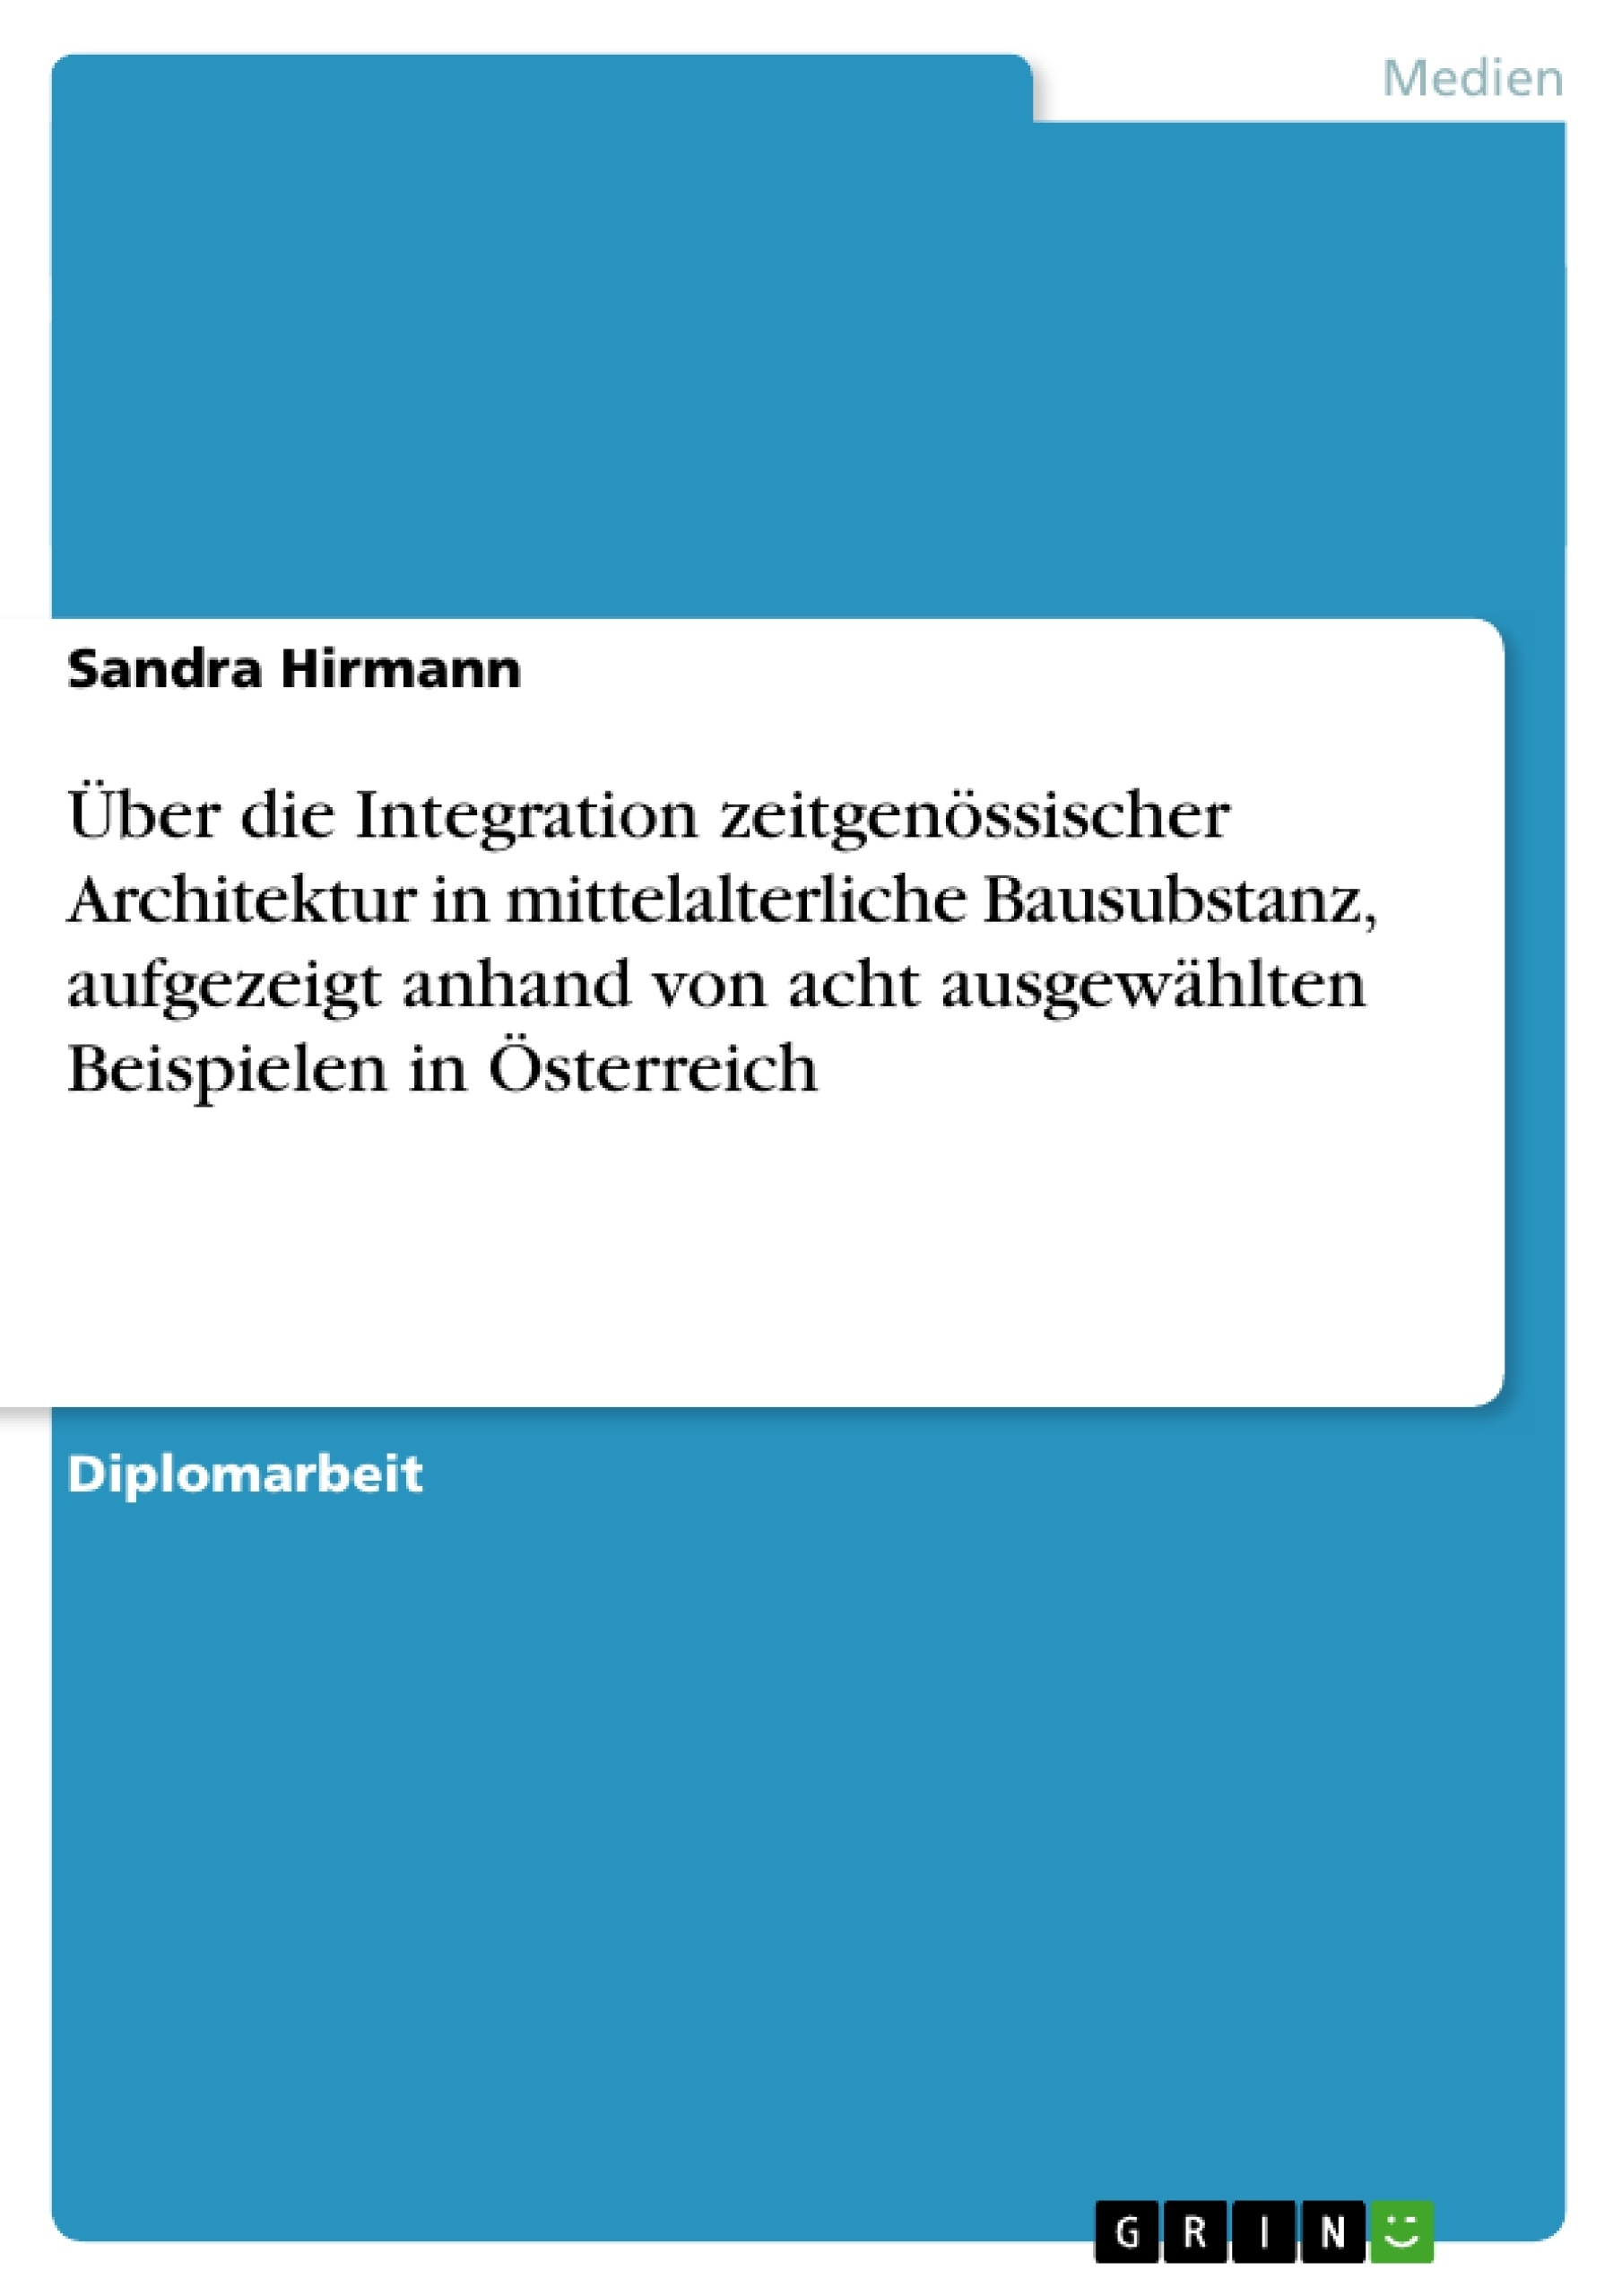 Titre: Über die Integration zeitgenössischer Architektur in mittelalterliche Bausubstanz, aufgezeigt anhand von acht ausgewählten Beispielen in Österreich 